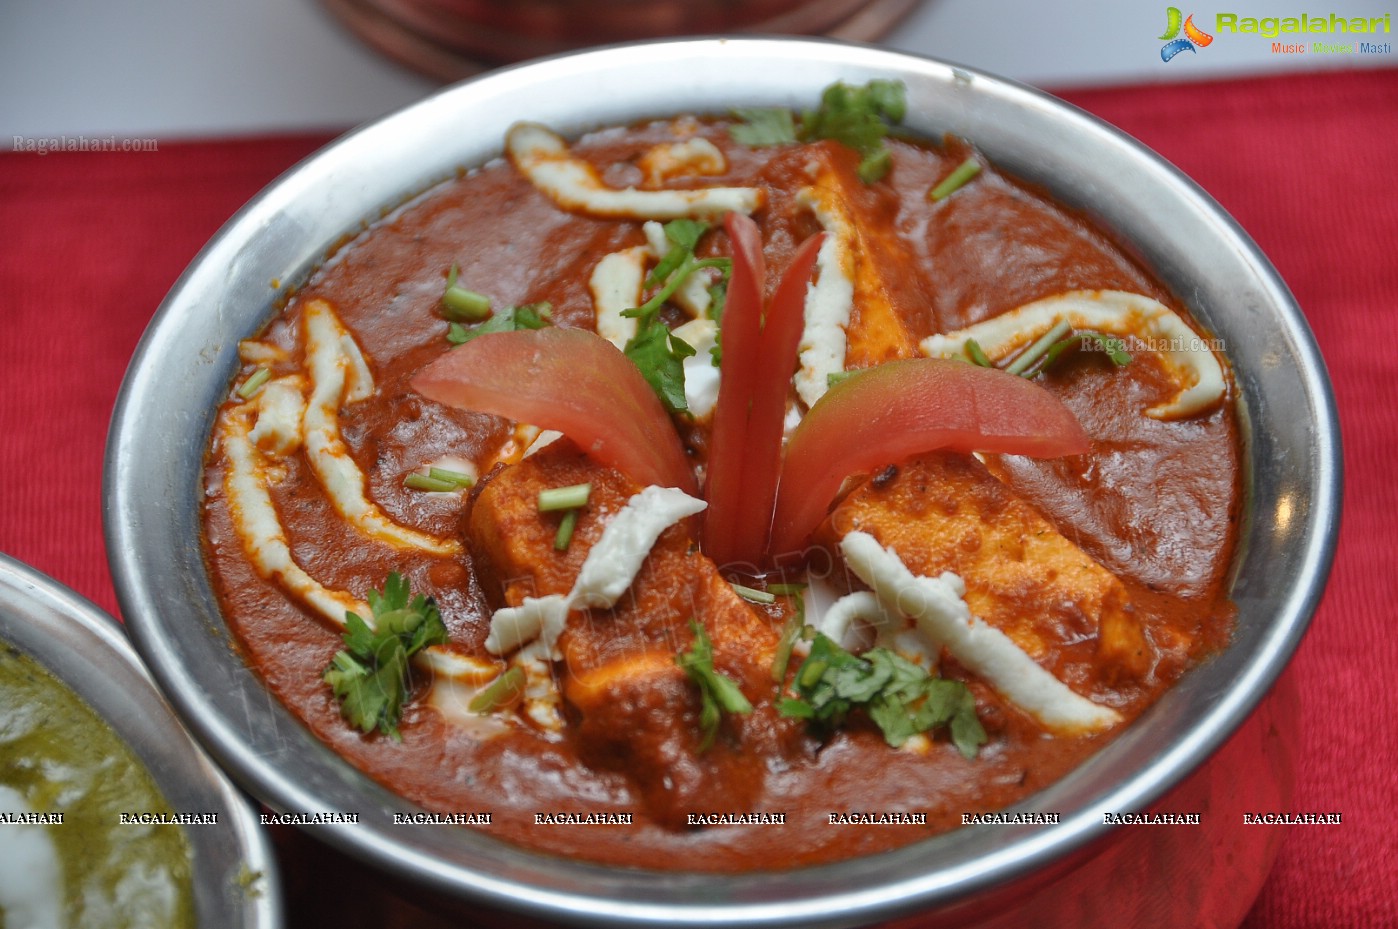 Punjabi Food Festival at Hotel Golden Park, Hyderabad